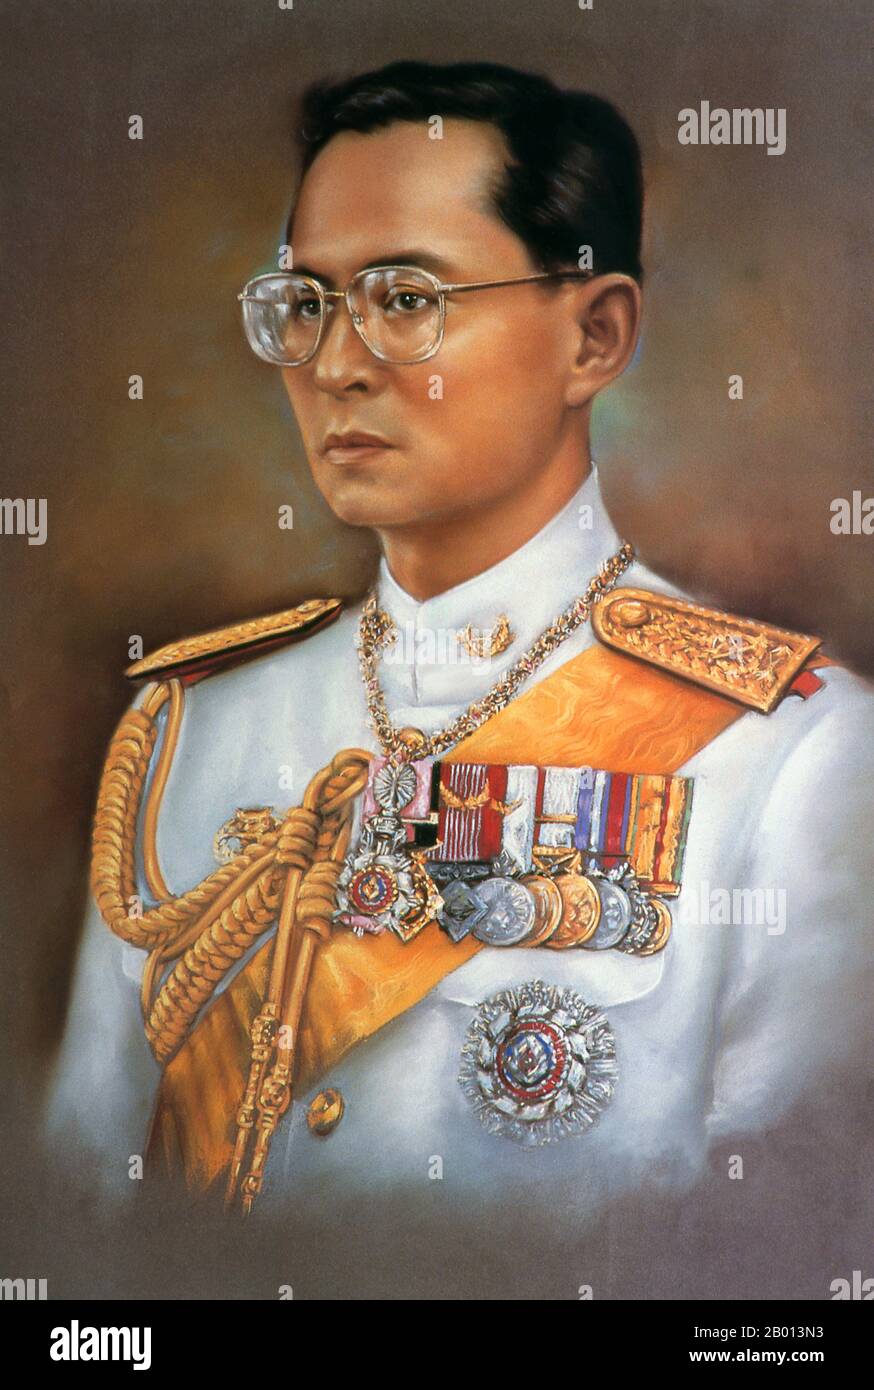 Thaïlande: Roi Rama IX, Bhumibol Adulyadej (5 décembre 1927 – 13 octobre 2016), 9e monarque de la dynastie Chakri. Peinture à l'huile sur toile, 20e siècle. Bhumibol Adulyadej (Phumiphon Adunyadet) était le 9e roi de Thaïlande. Il était connu sous le nom de Rama IX, et au sein de la famille royale thaïlandaise et de proches associés simplement comme Lek. Régnant depuis le 9 juin 1946, il était l'un des chefs d'État les plus longtemps au monde et le monarque le plus ancien de l'histoire thaïlandaise. Banque D'Images